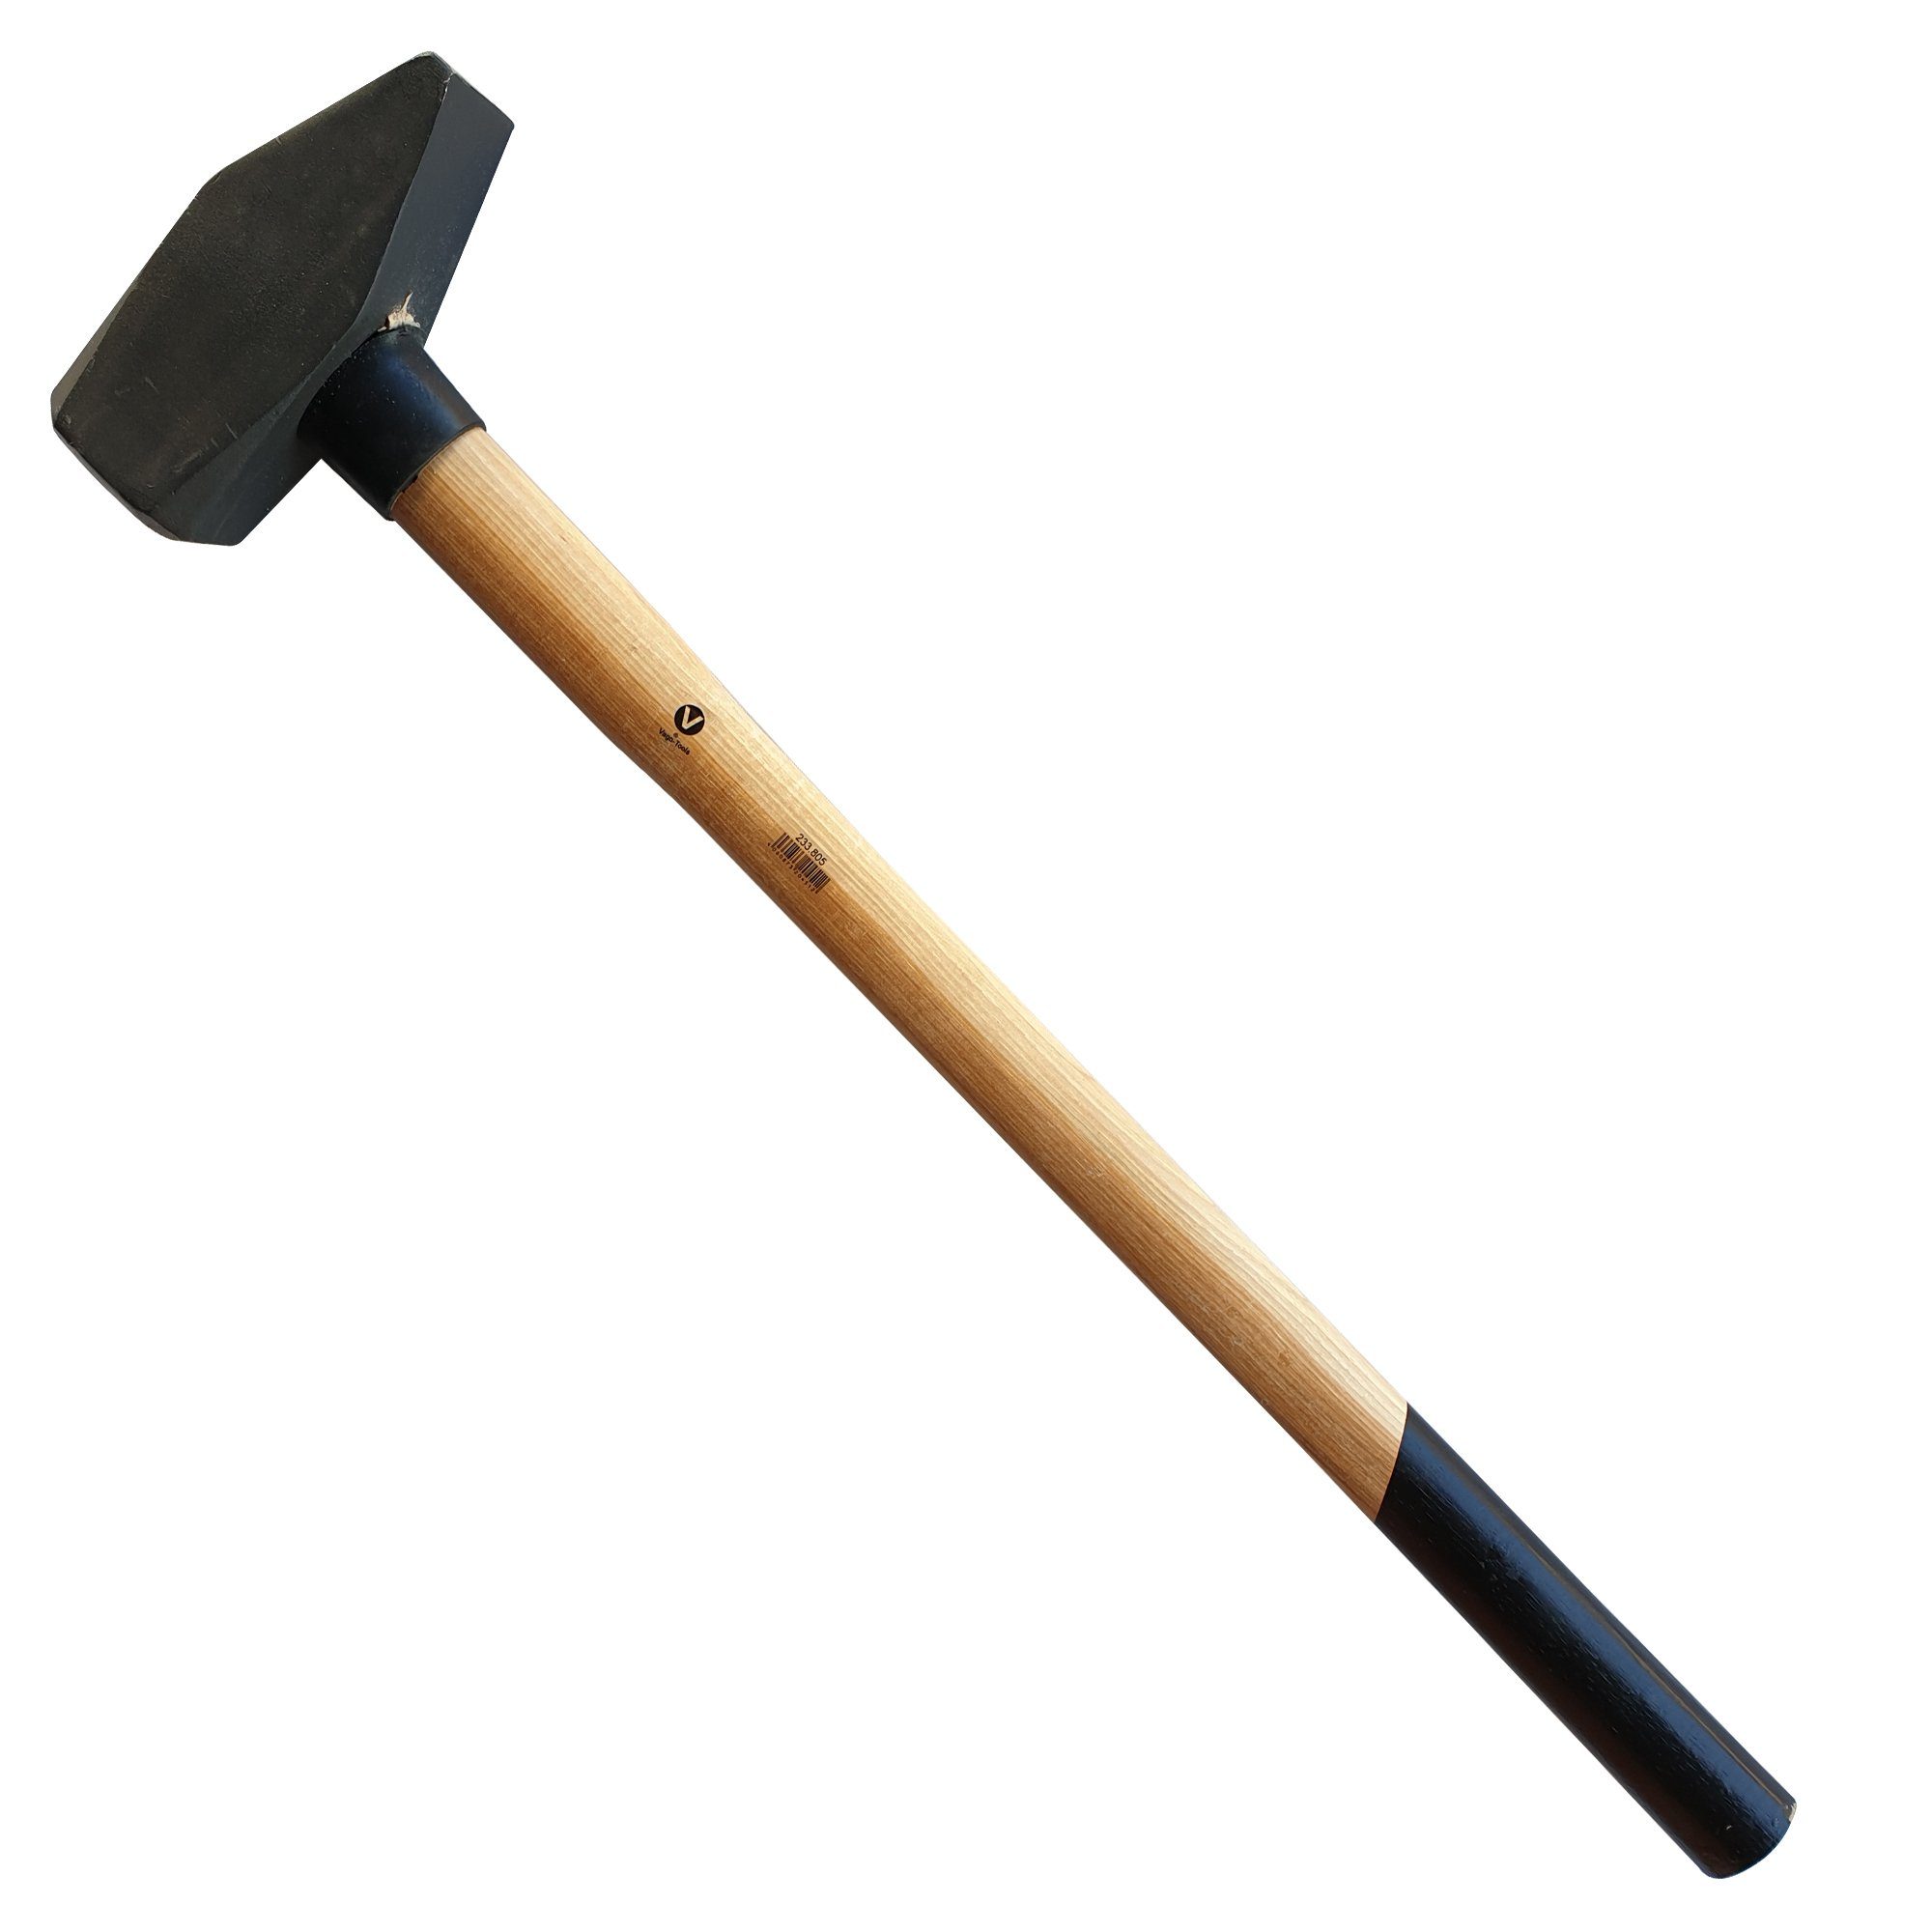 Hämmer VaGo-Tools Hammer Hammer Hickorystiel 3kg Schlosserhammer